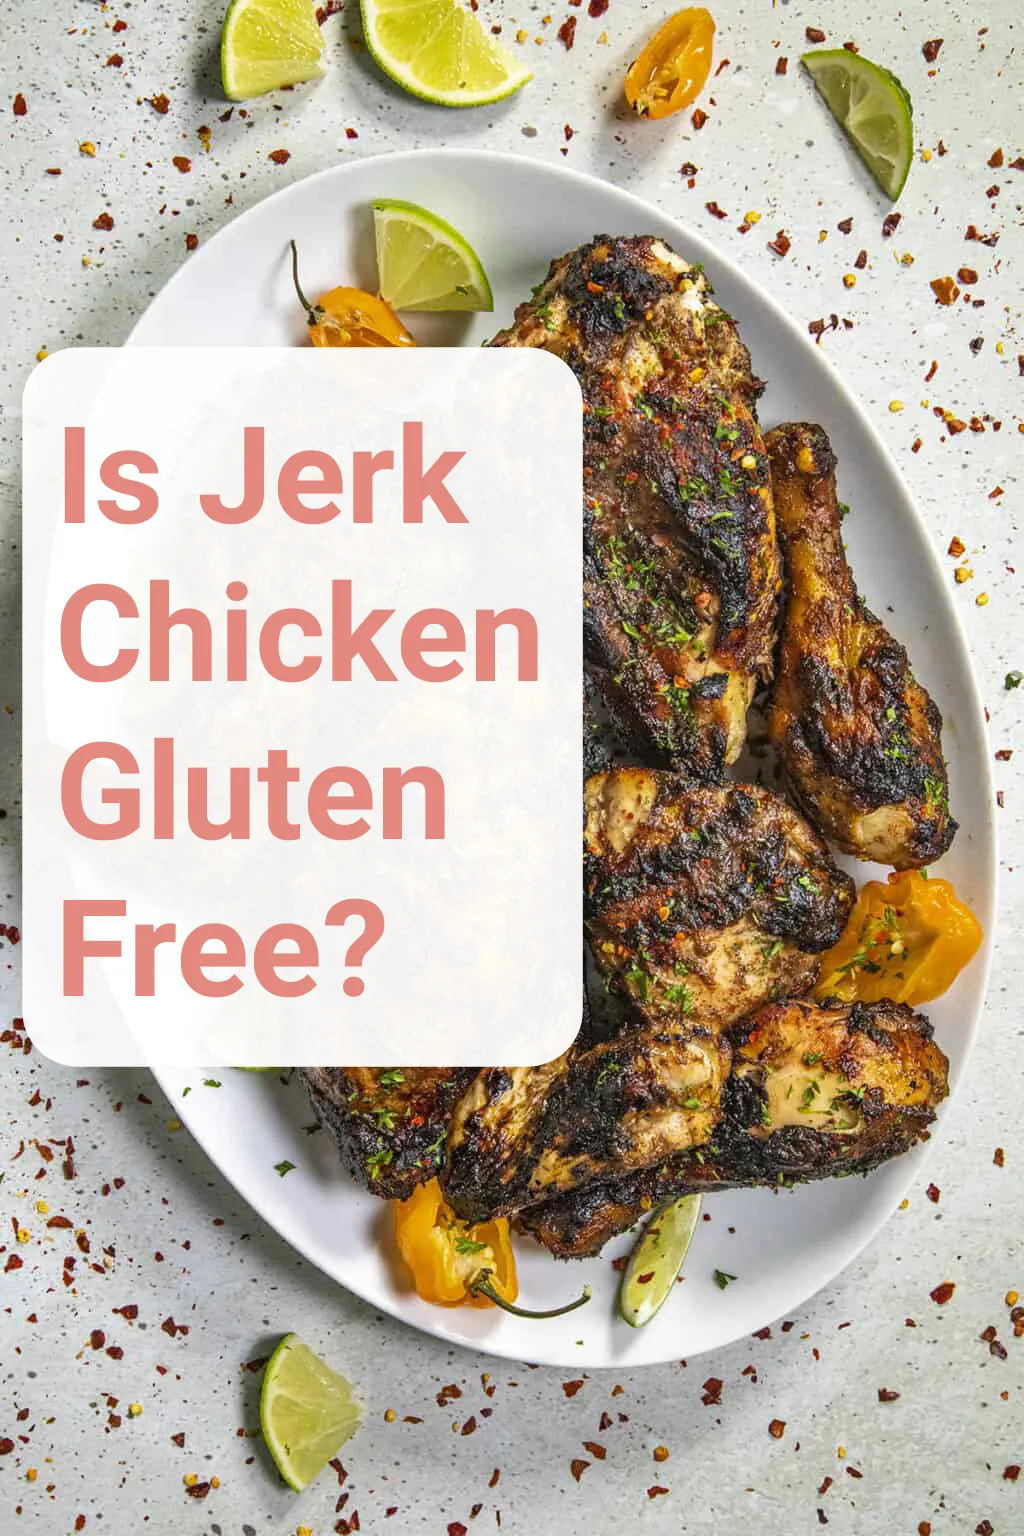 Is Jerk Chicken Gluten Free?